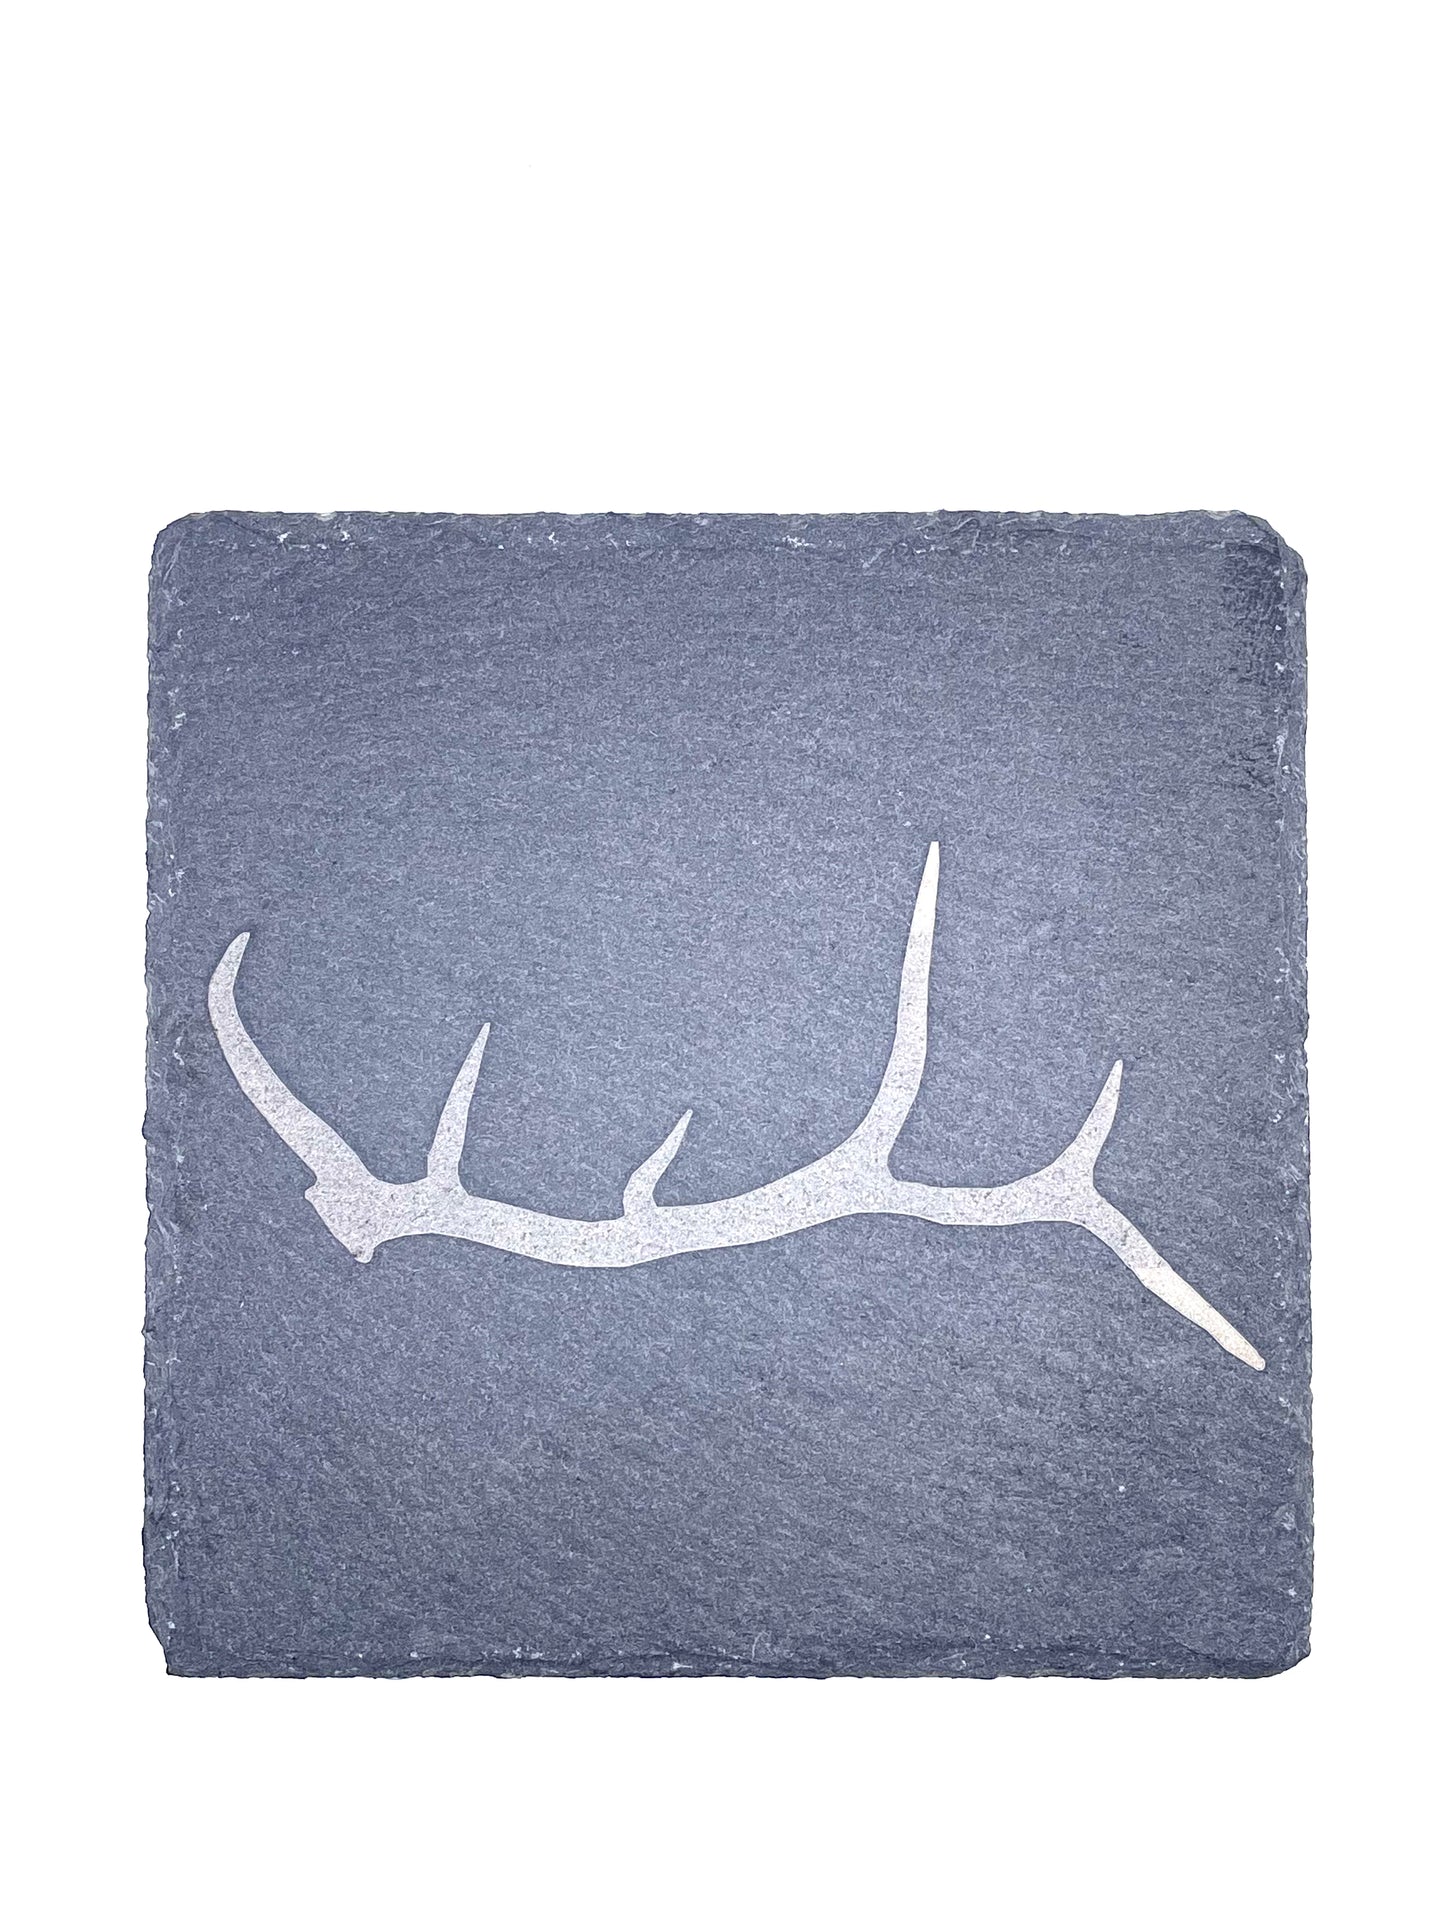 Elk Antler Stone Coasters (2 pack)